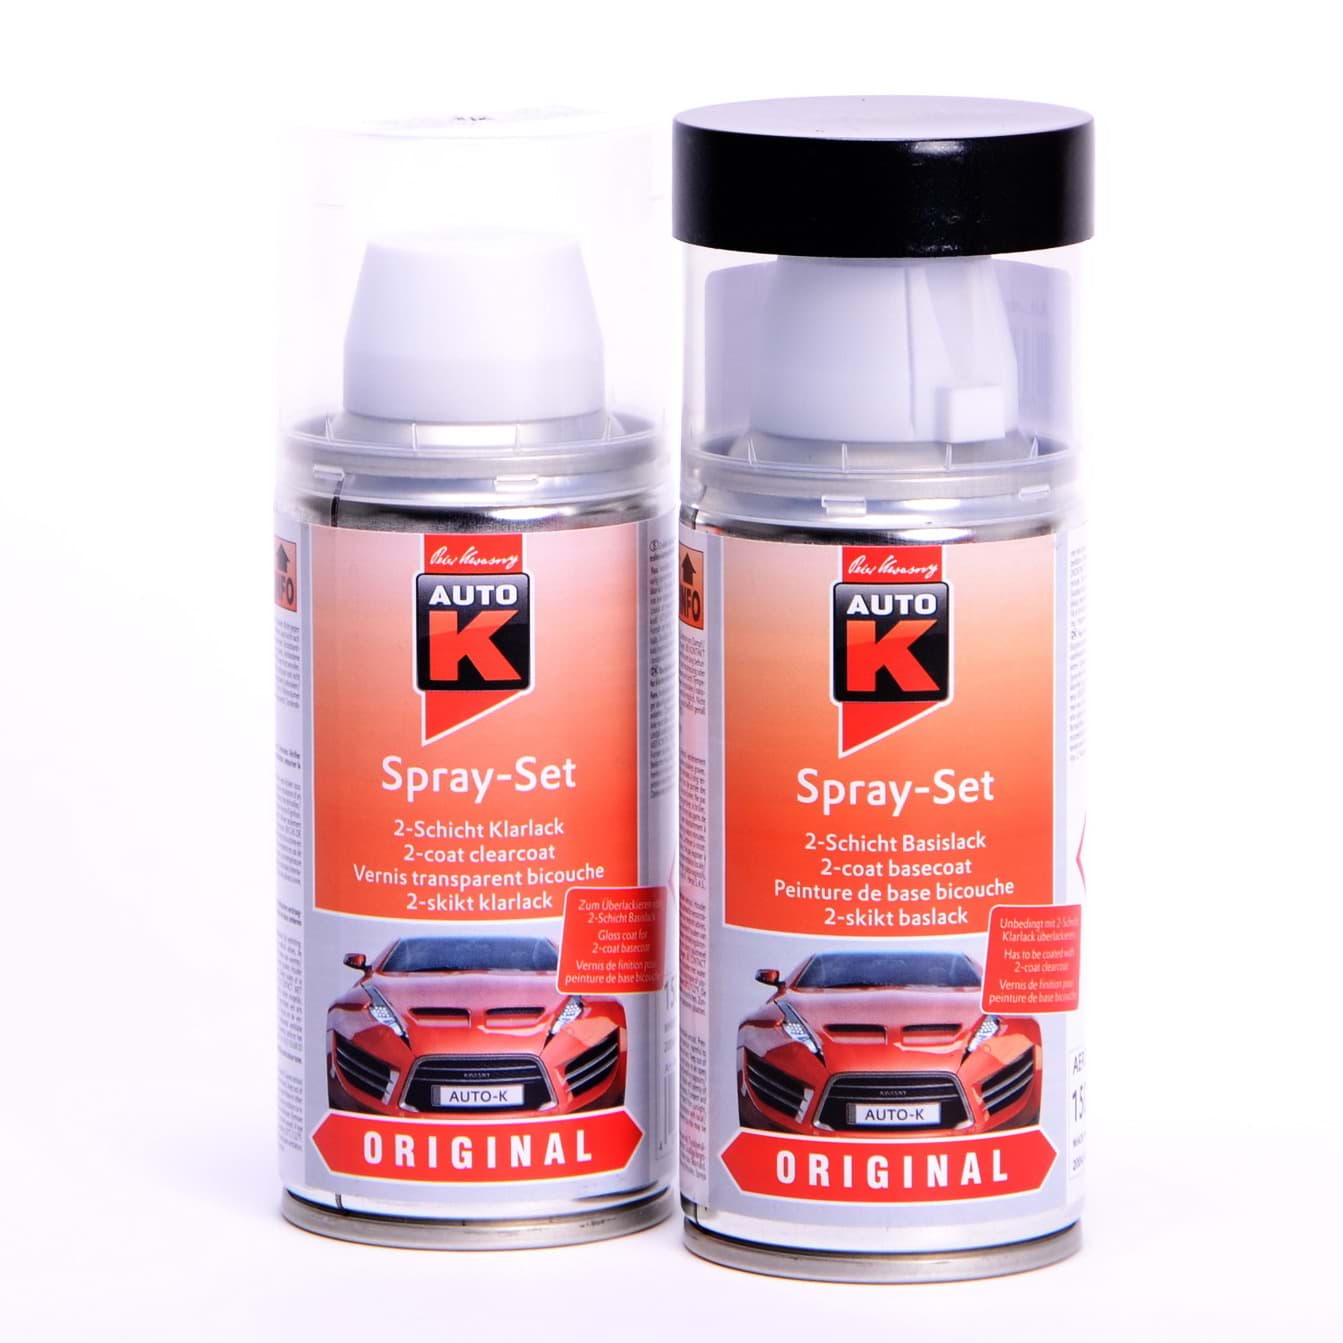 Auto-K Spray-Set Autolack für Opel 282 Polarmeerblau met 21393 resmi